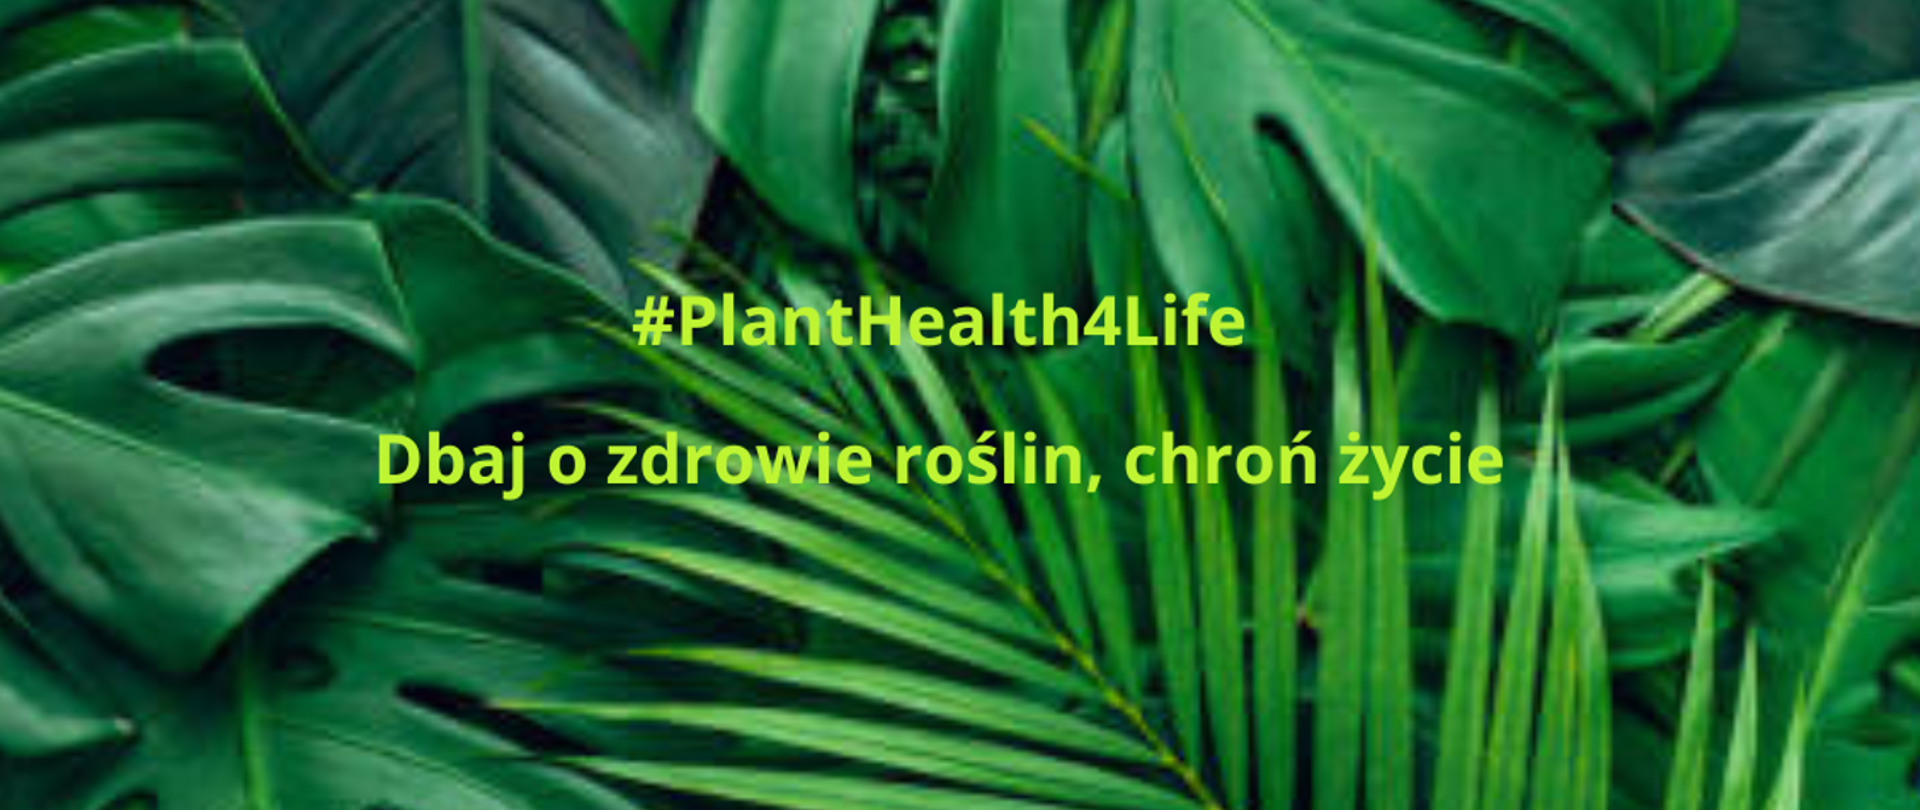 zdjęcie zielonych liści i napis #PlantHealth4Life Dbaj o zdrowie roślin, chroń życie